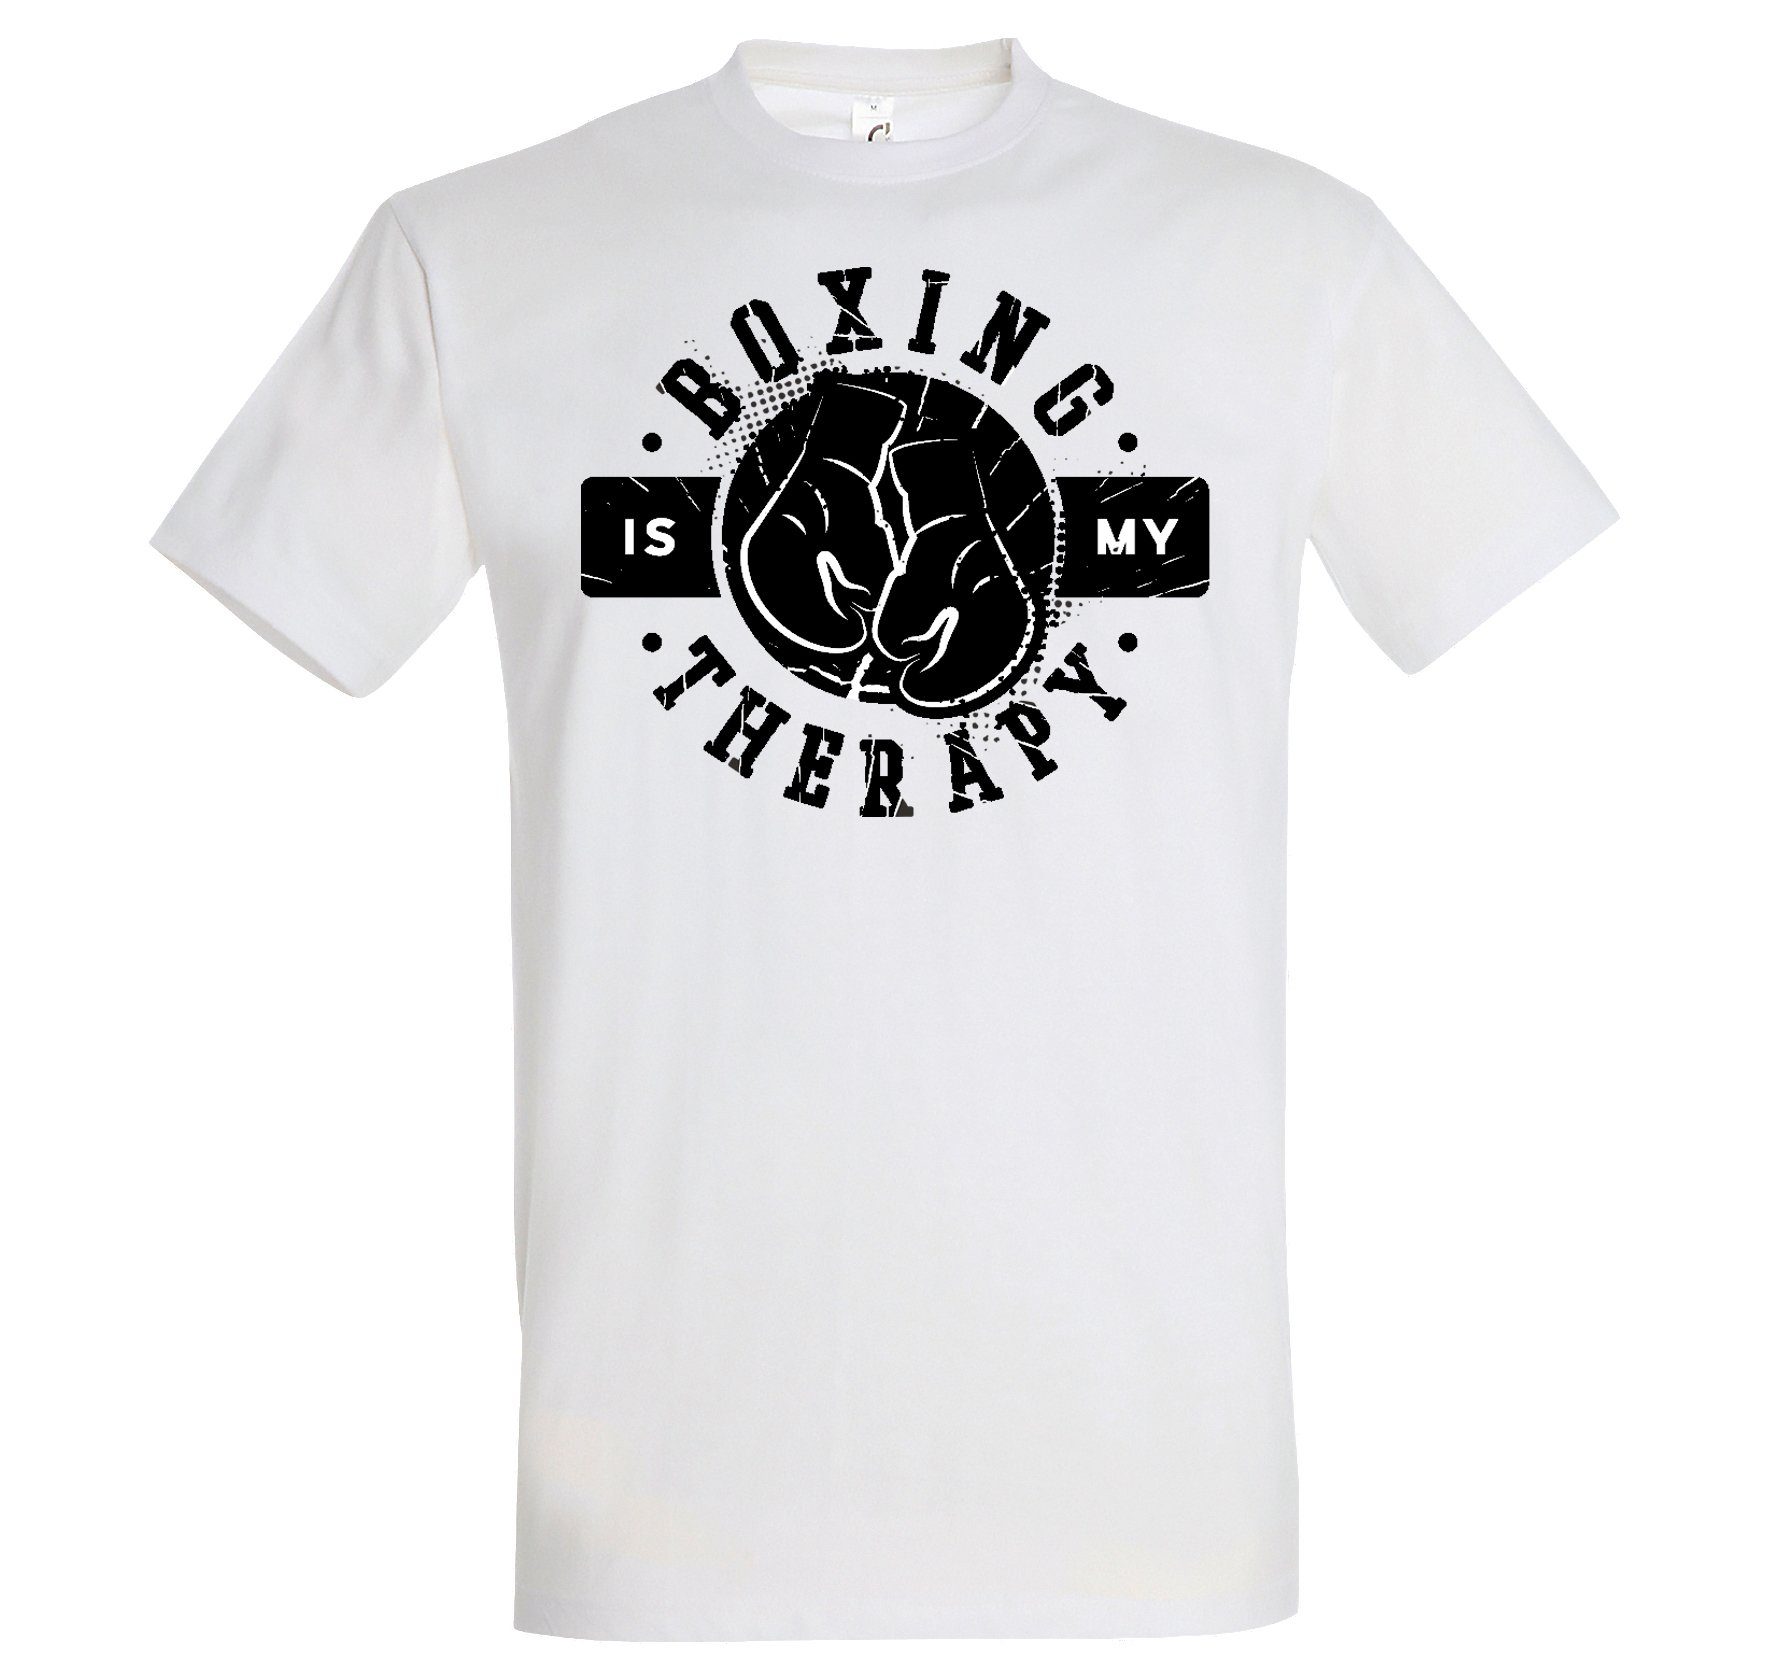 Herren Weiß Boxen Youth Is mit Designz trendigem Shirt Frontprint My Therapie T-Shirt